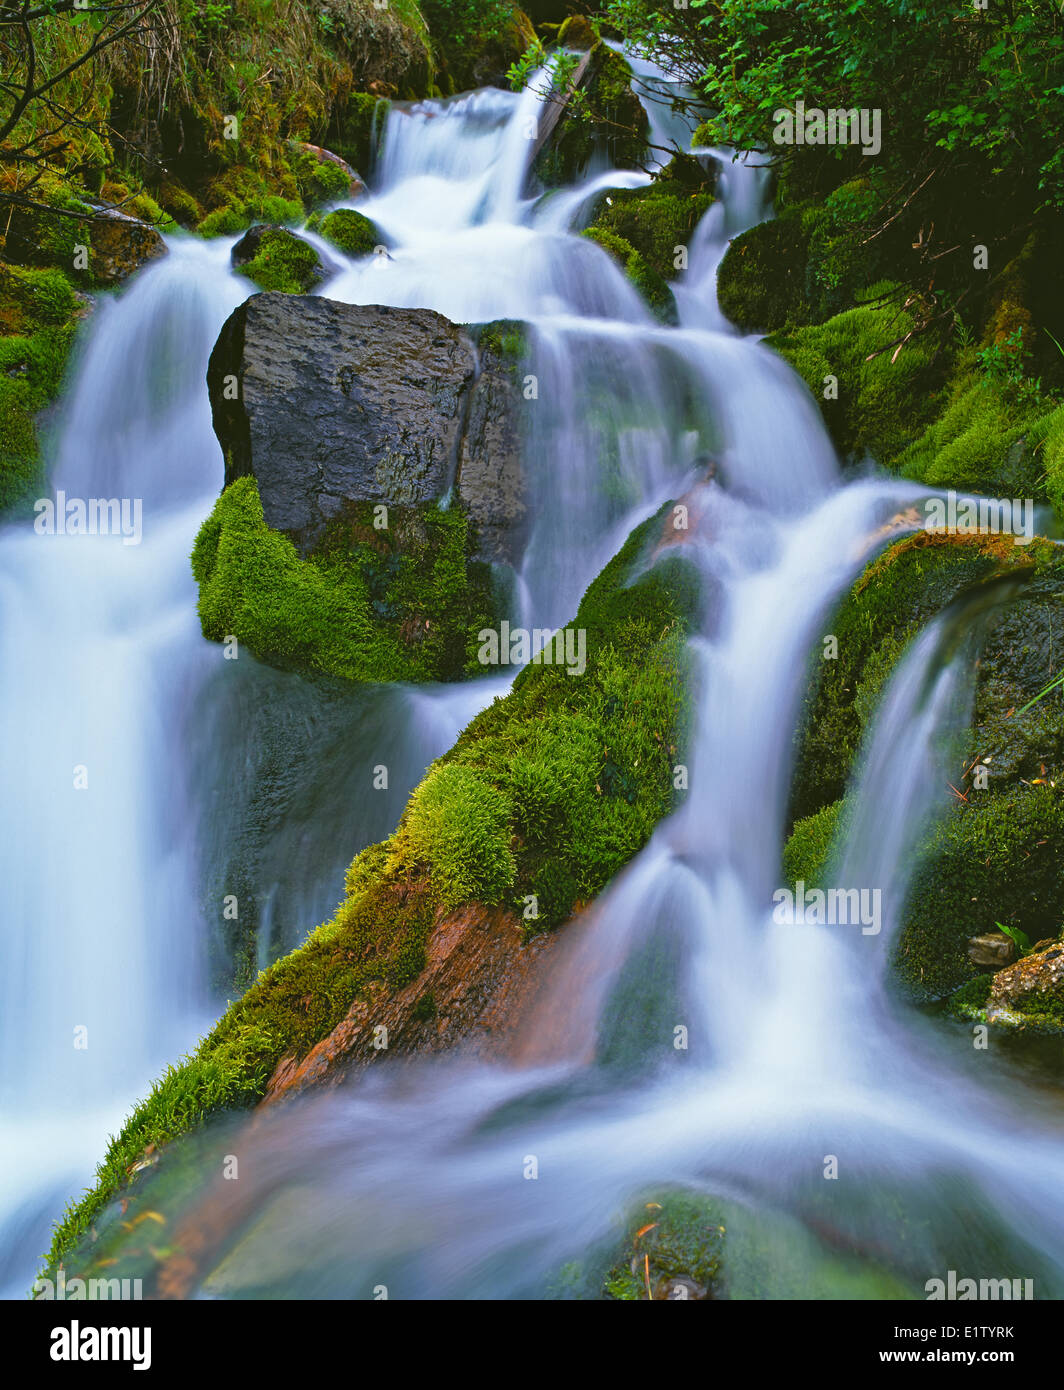 Chute d'eau qui coule à travers une forêt tropicale de l'île de Vancouver, Colombie-Britannique, Canada Banque D'Images